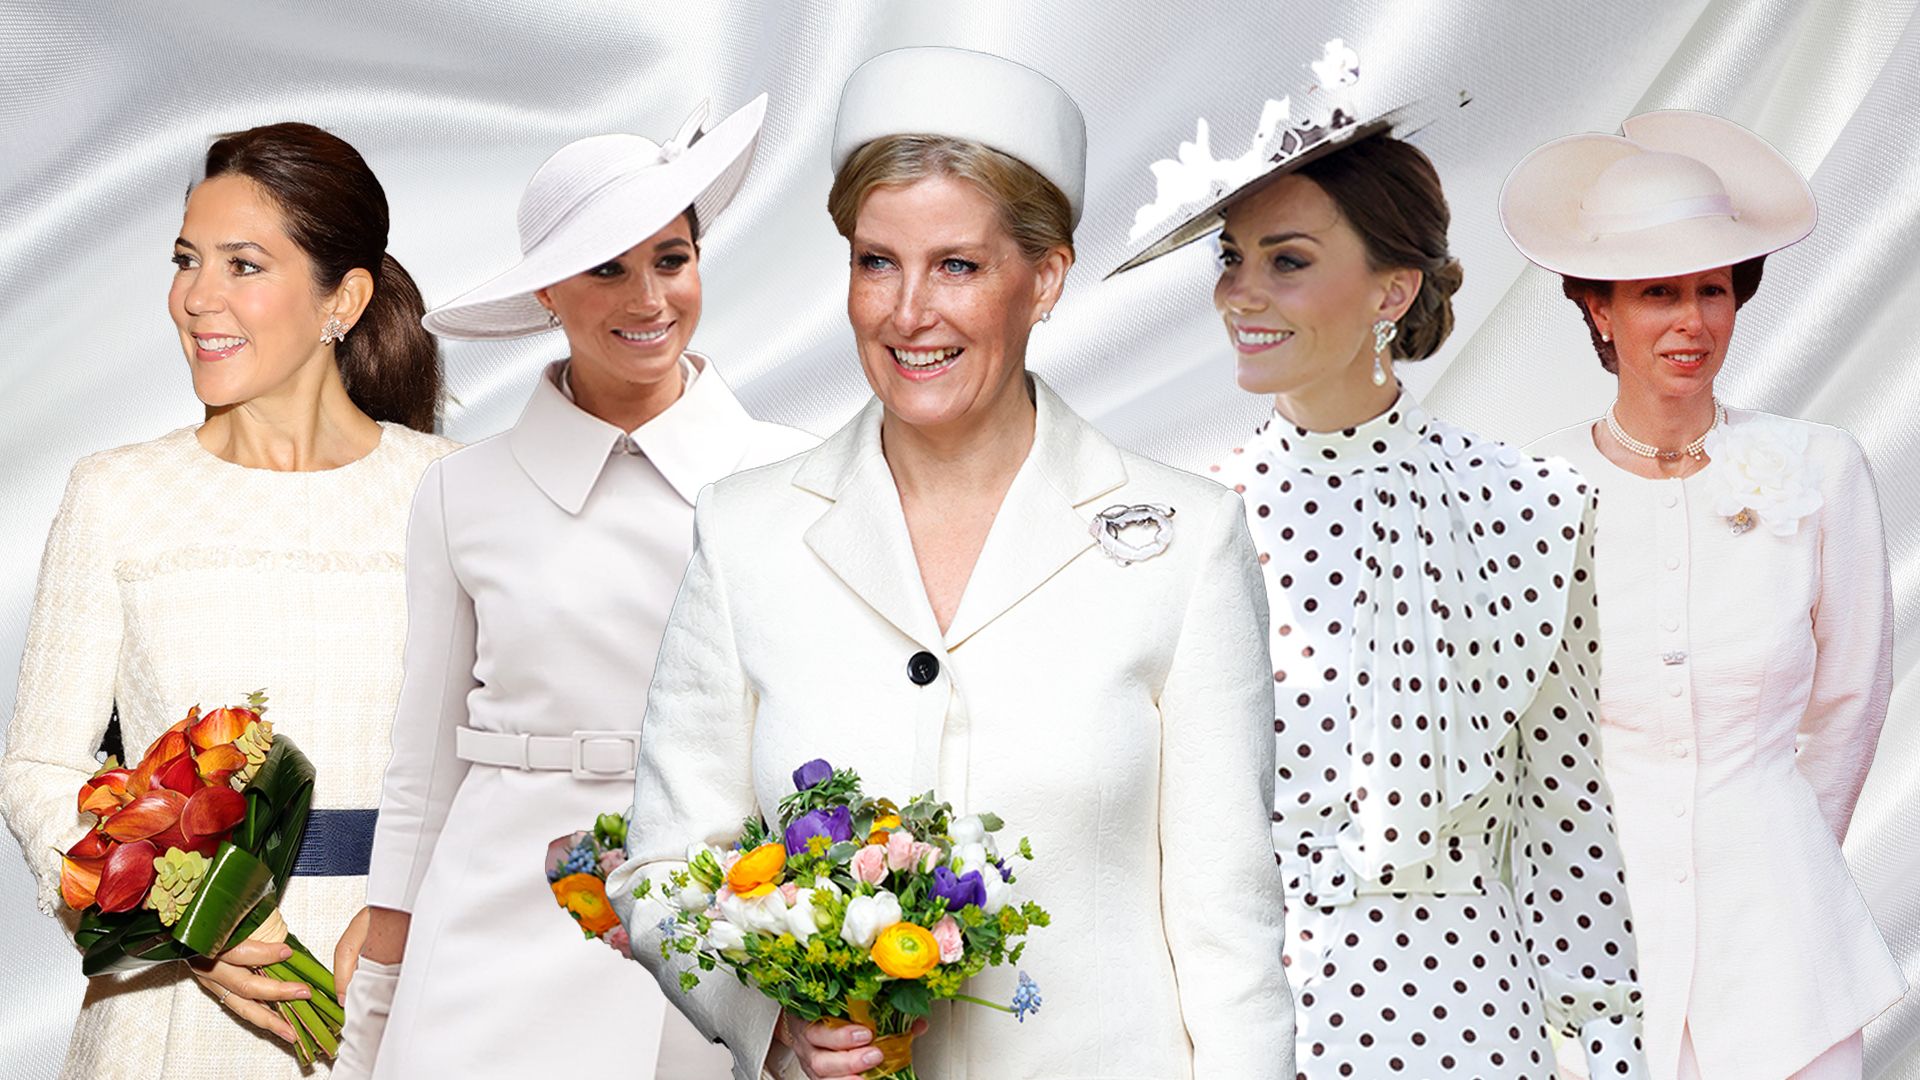 Royal ladies wearing white